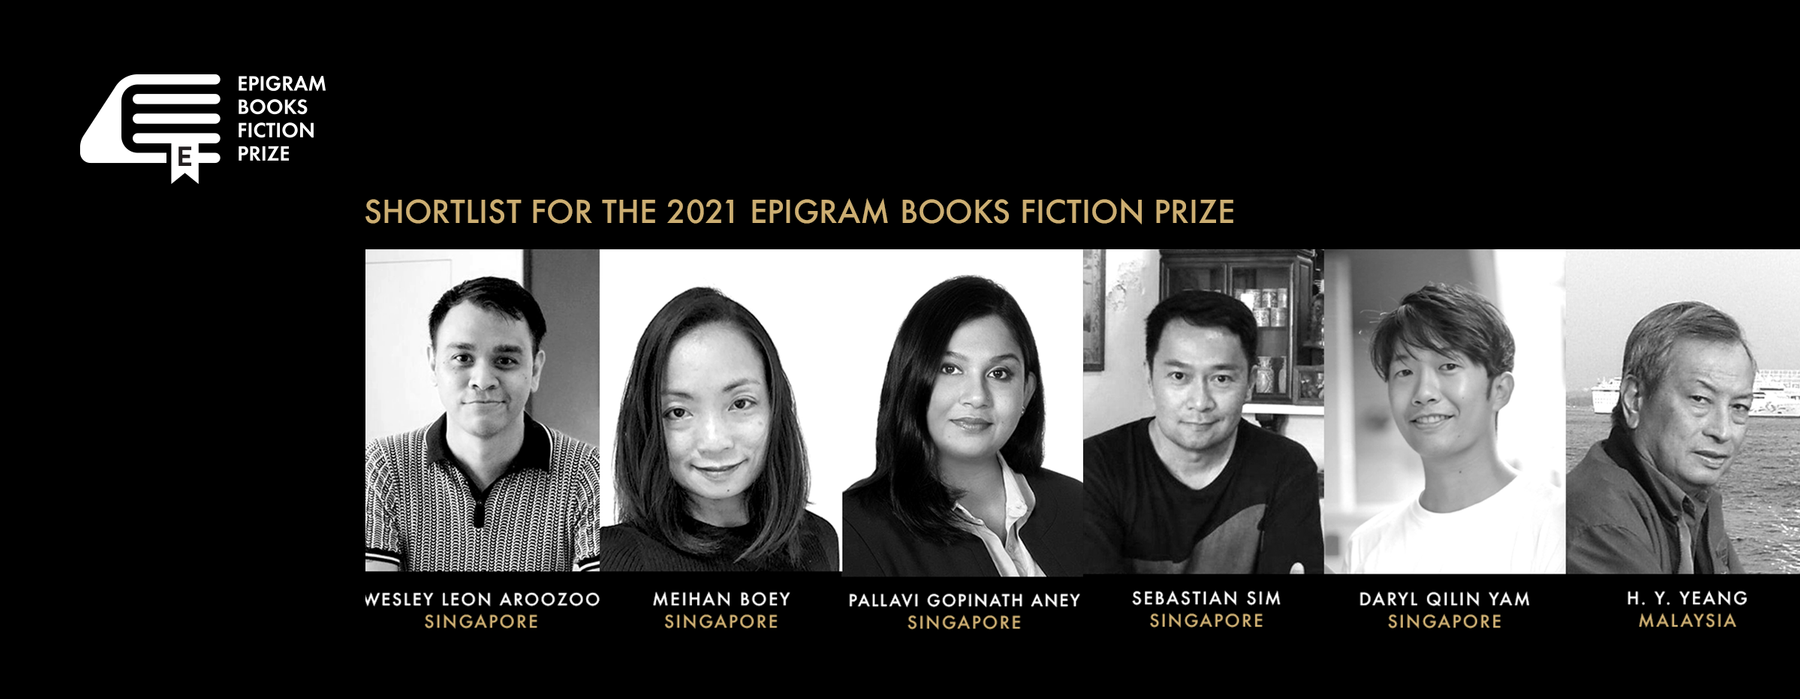 Meet the 2021 Epigram Books Fiction Prize shortlist